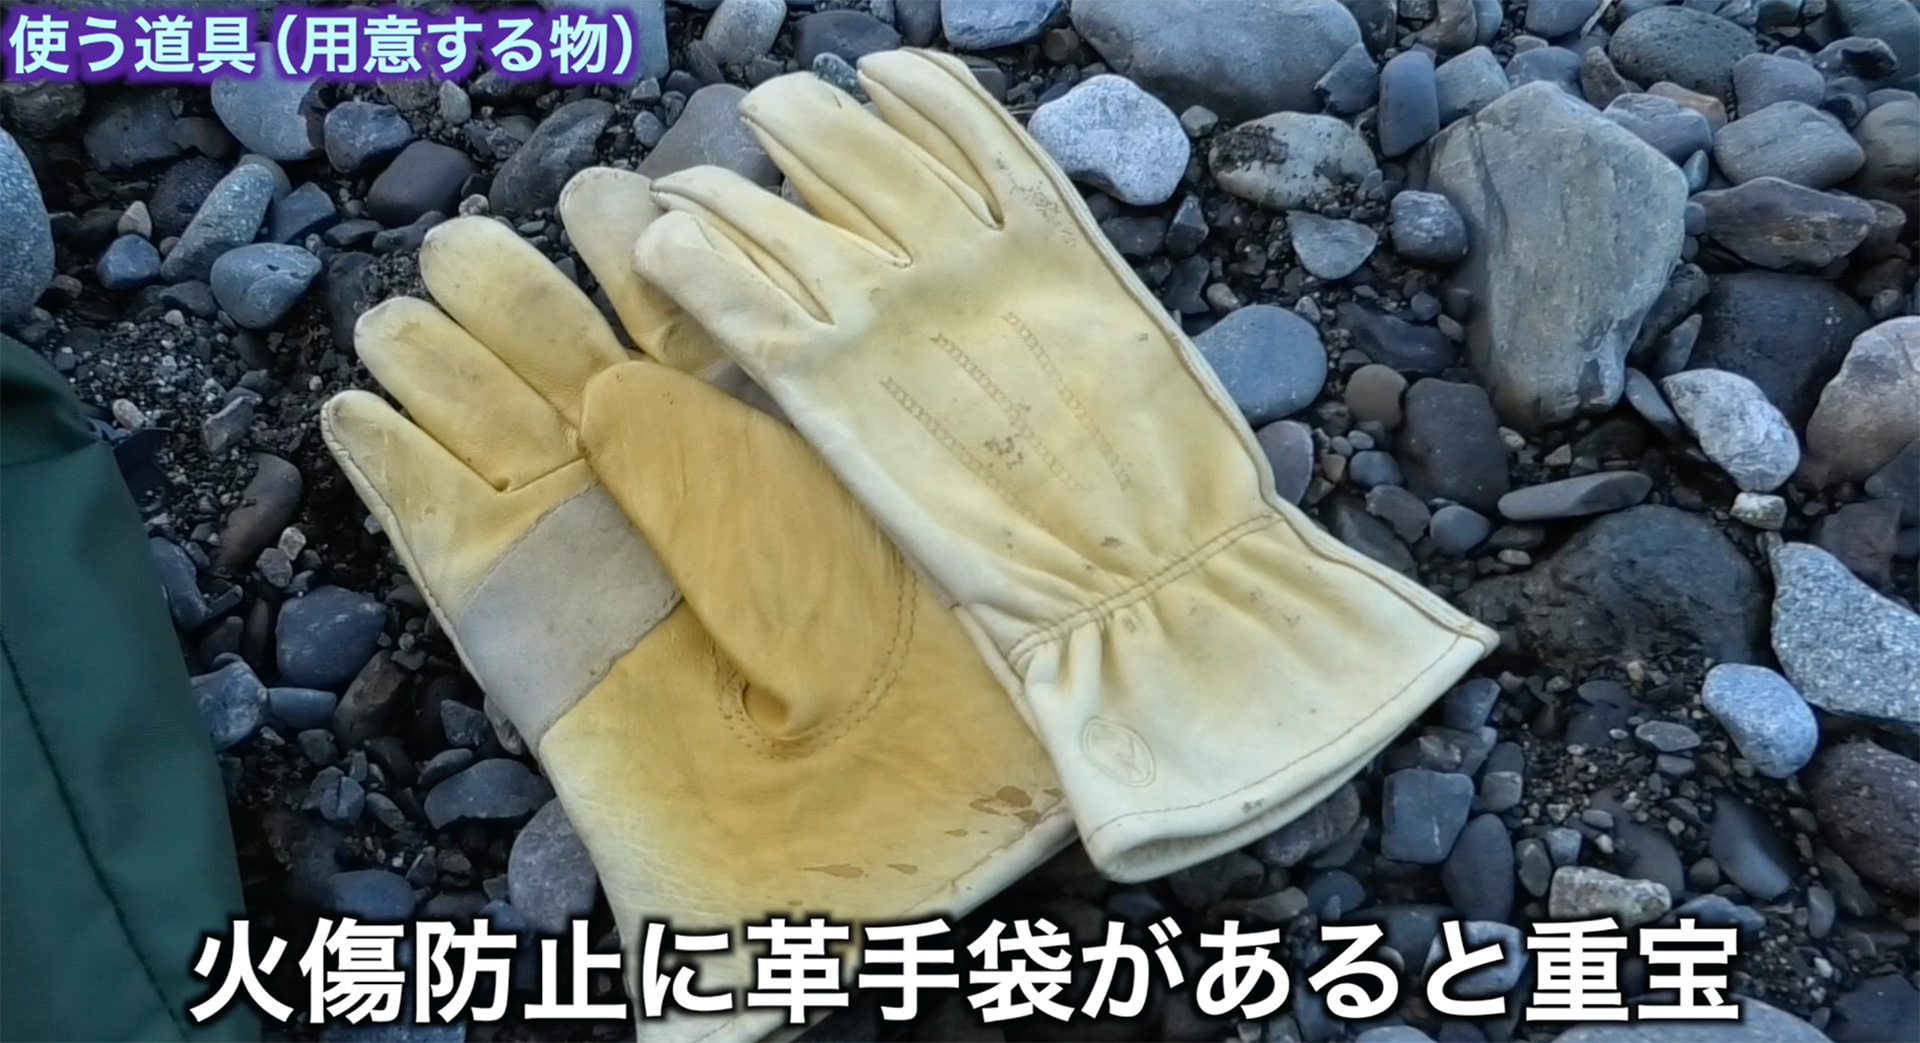 火傷防止に革製の手袋